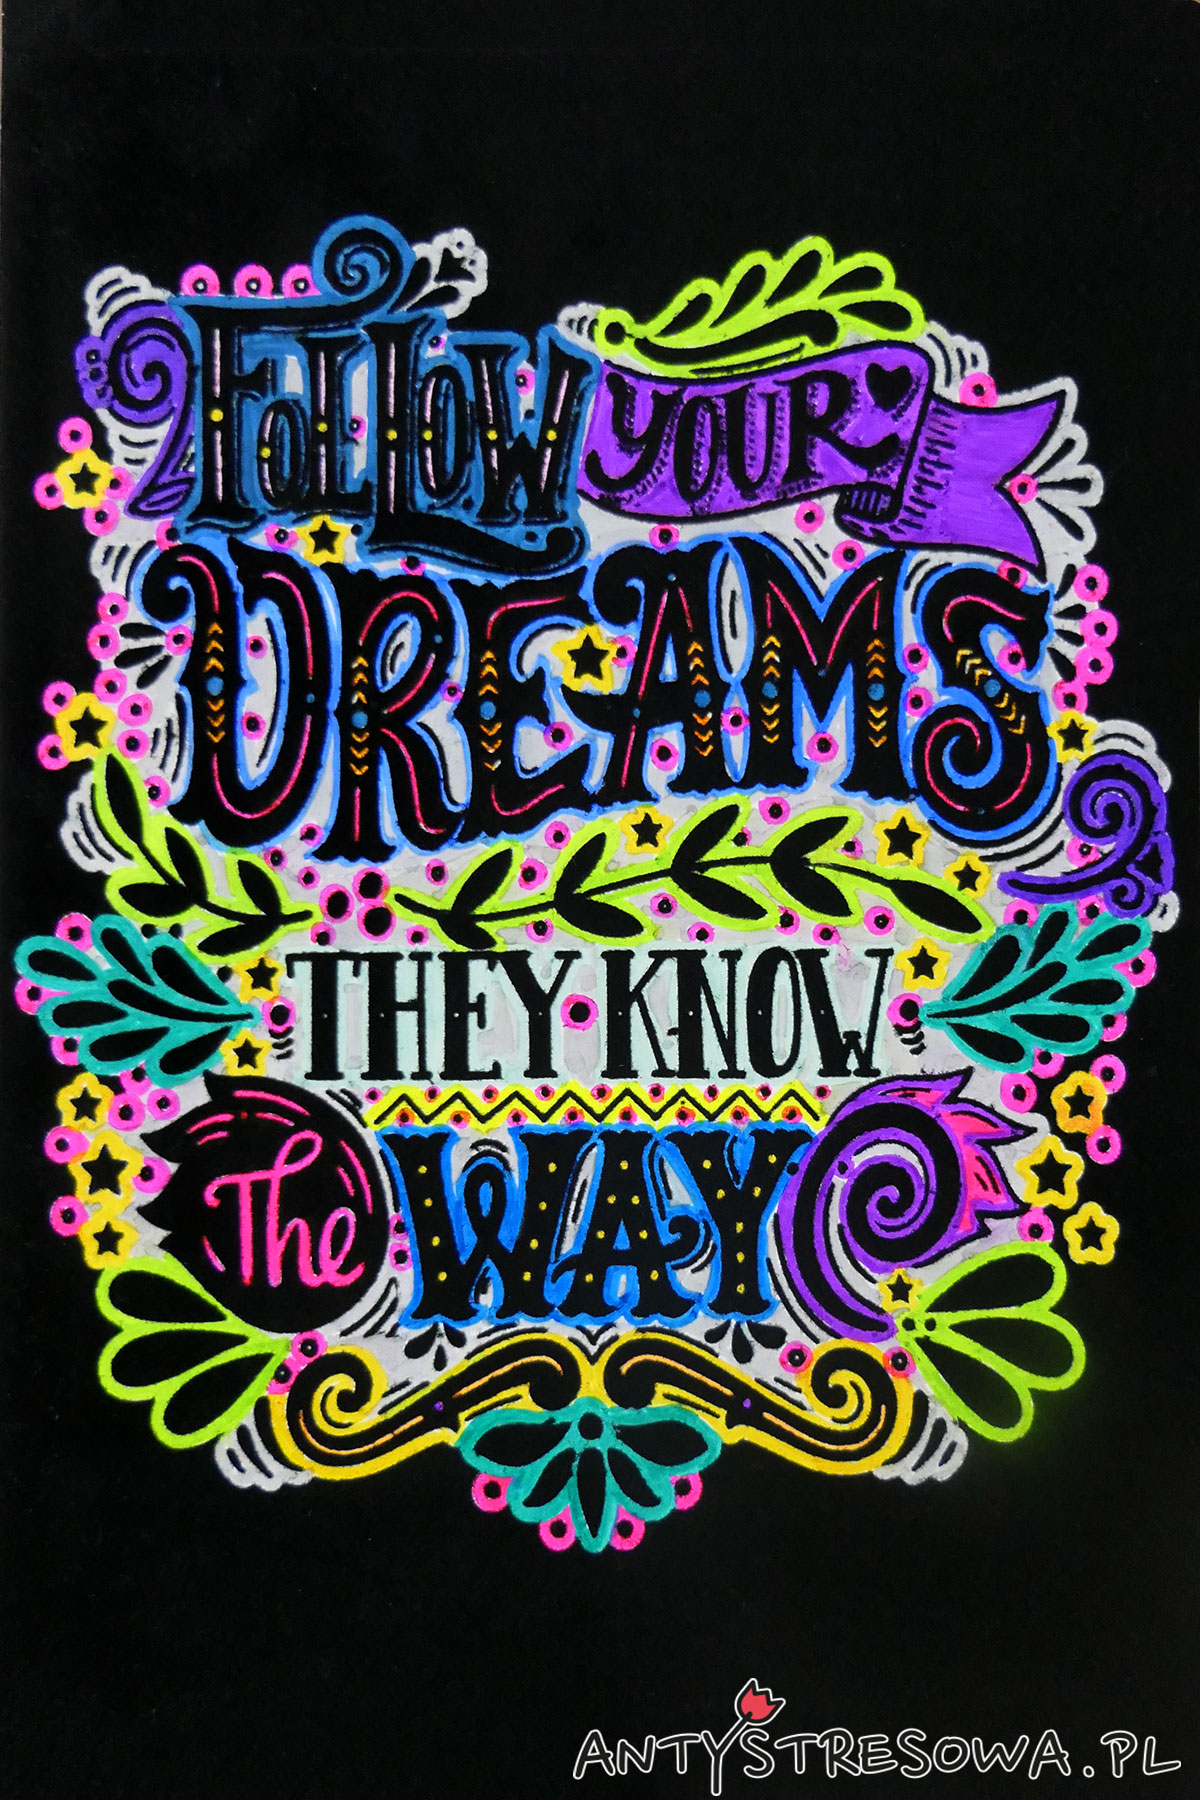 Follow your dreams, they know the way - kolorowanka